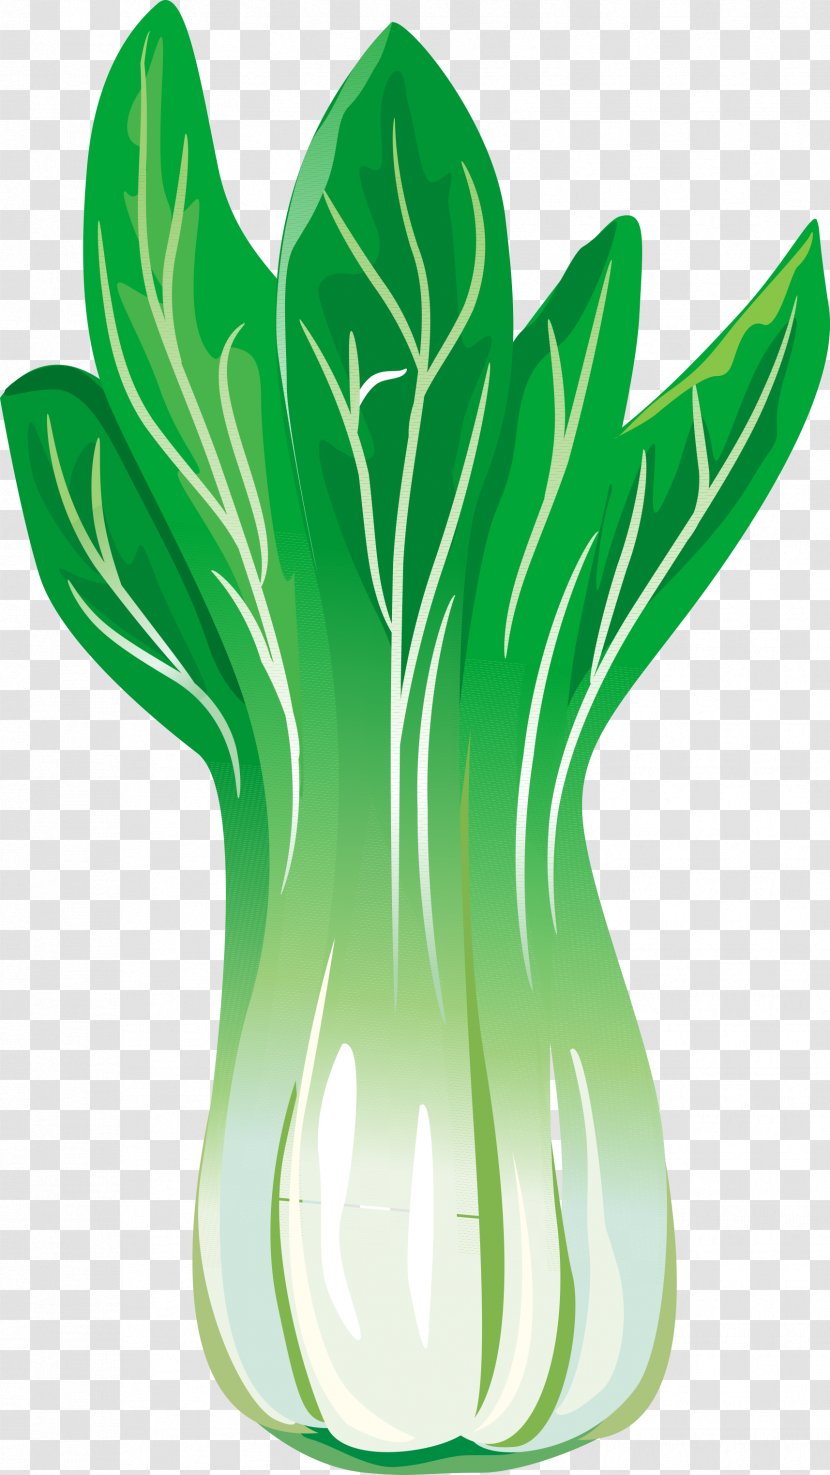 Chinese Cabbage Leaf Vegetable - Green Vegetables Transparent PNG